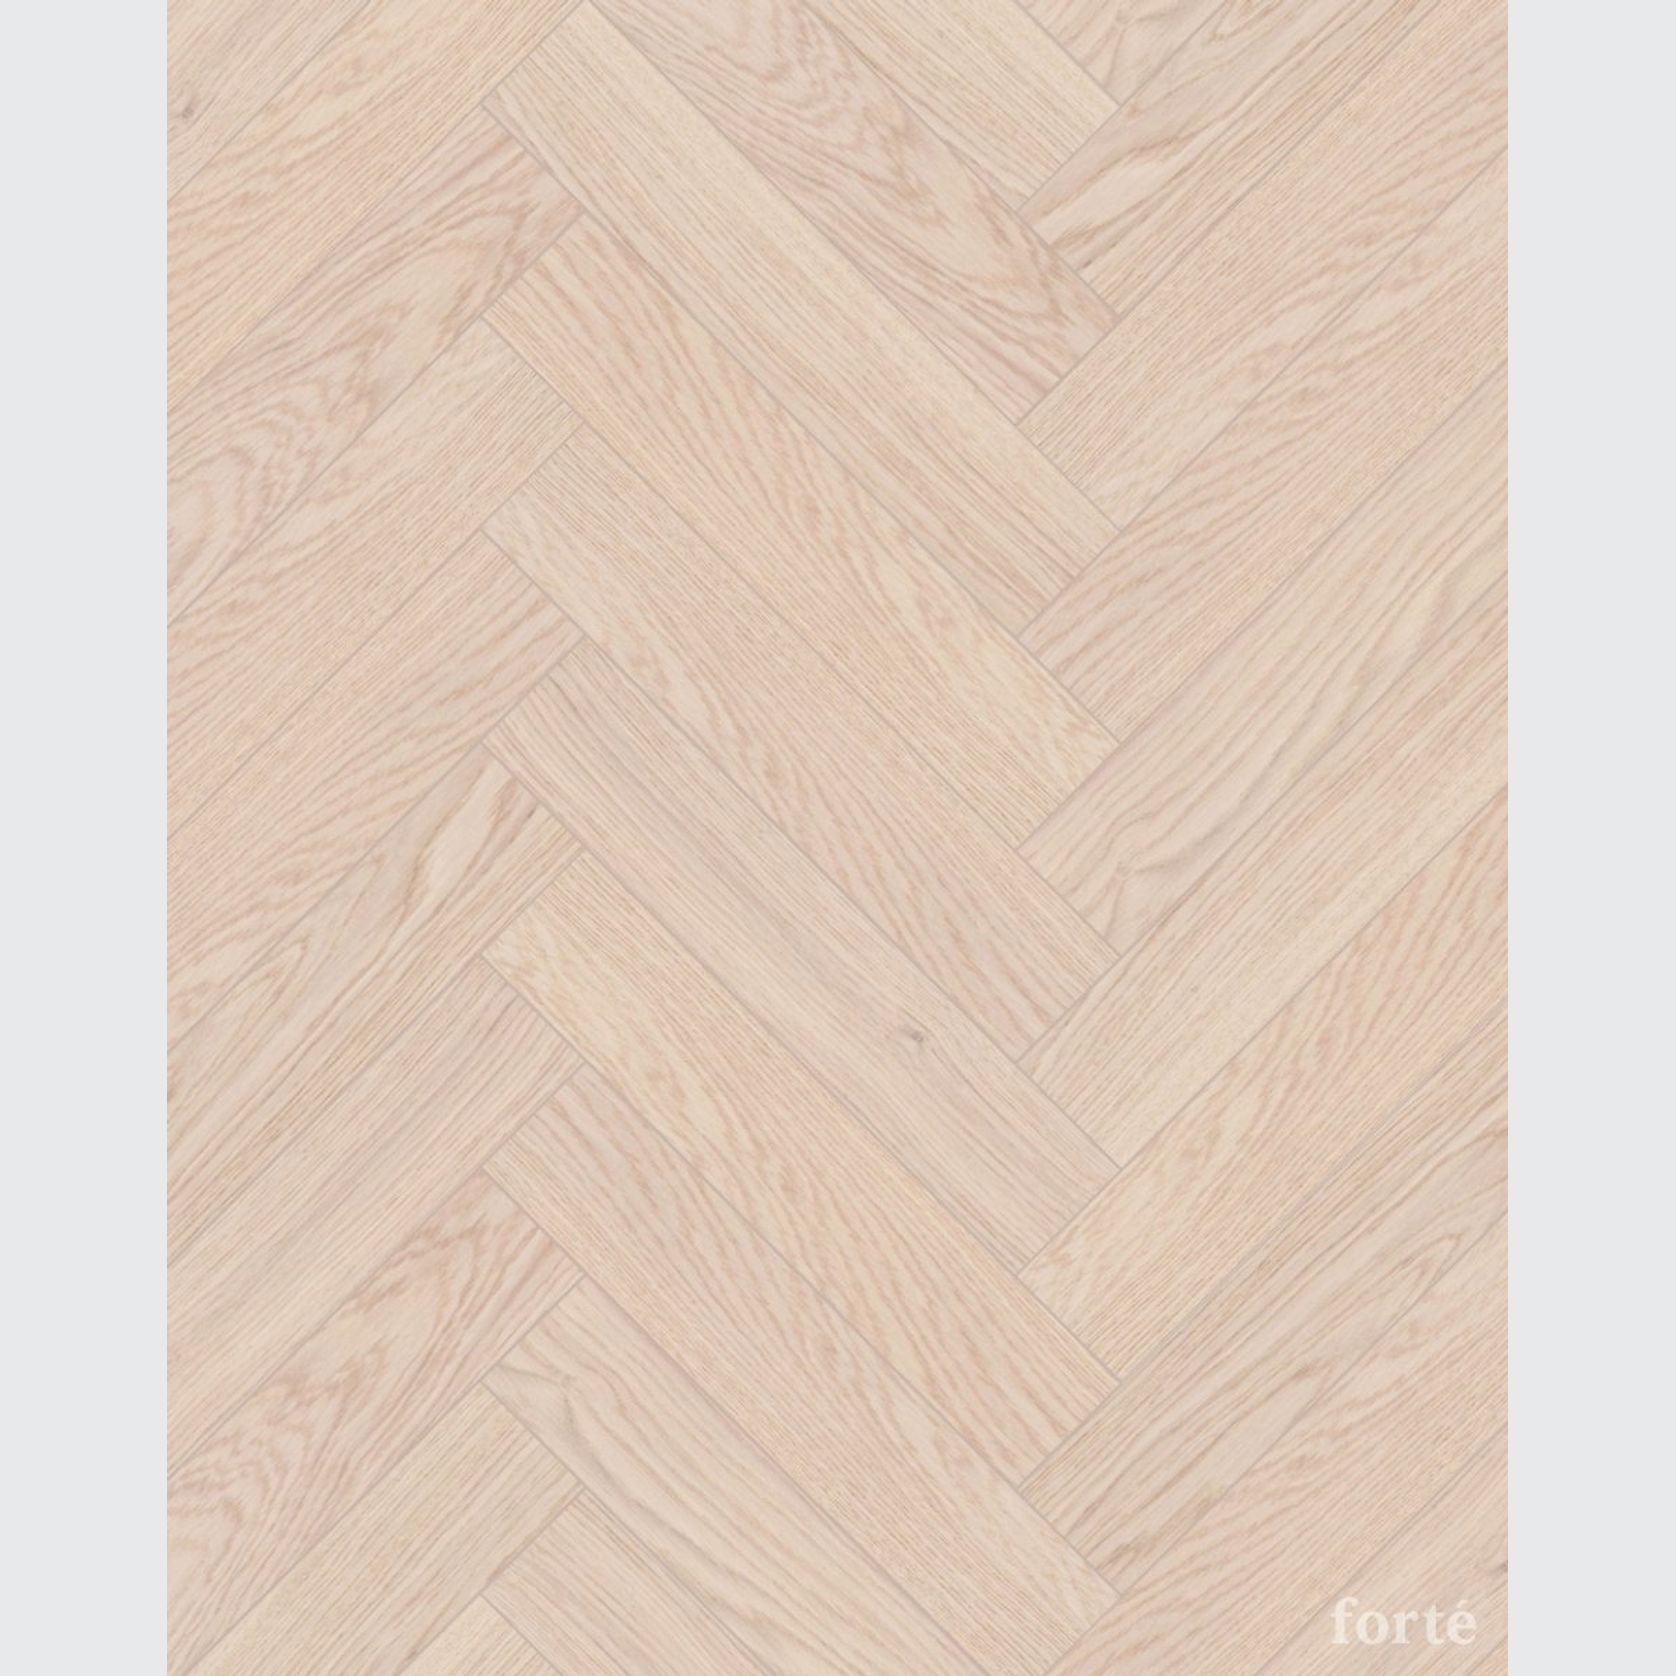 Smartfloor Blond Oak Herringbone Flooring gallery detail image